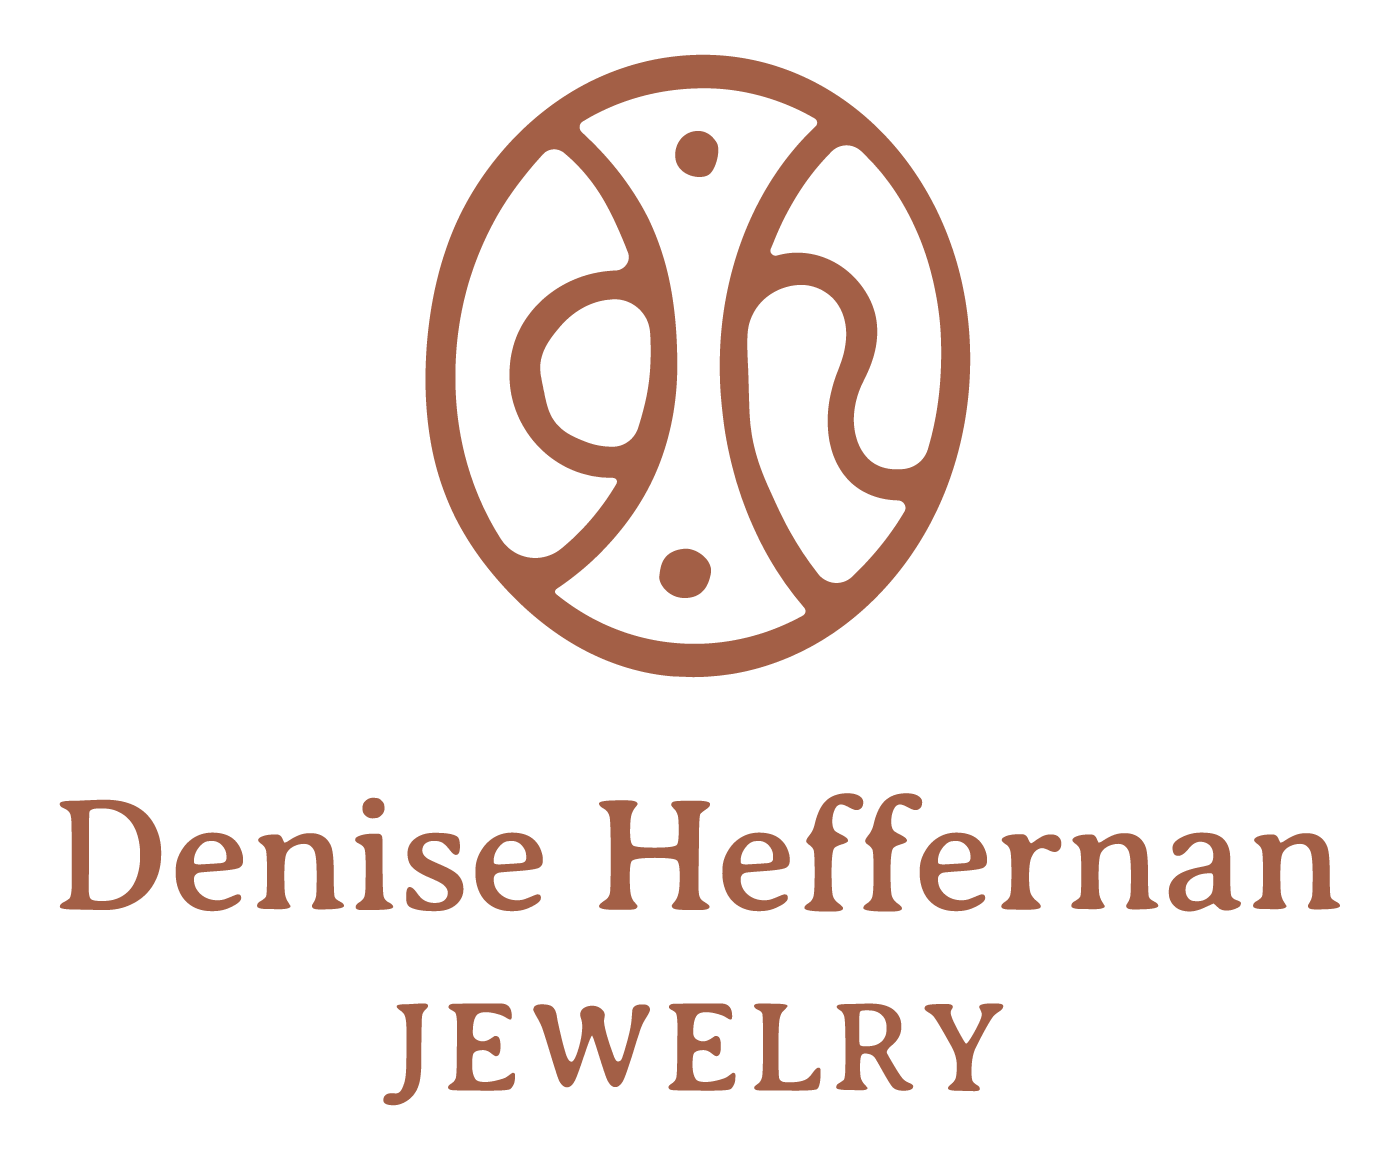 Denise Heffernan Jewelry 